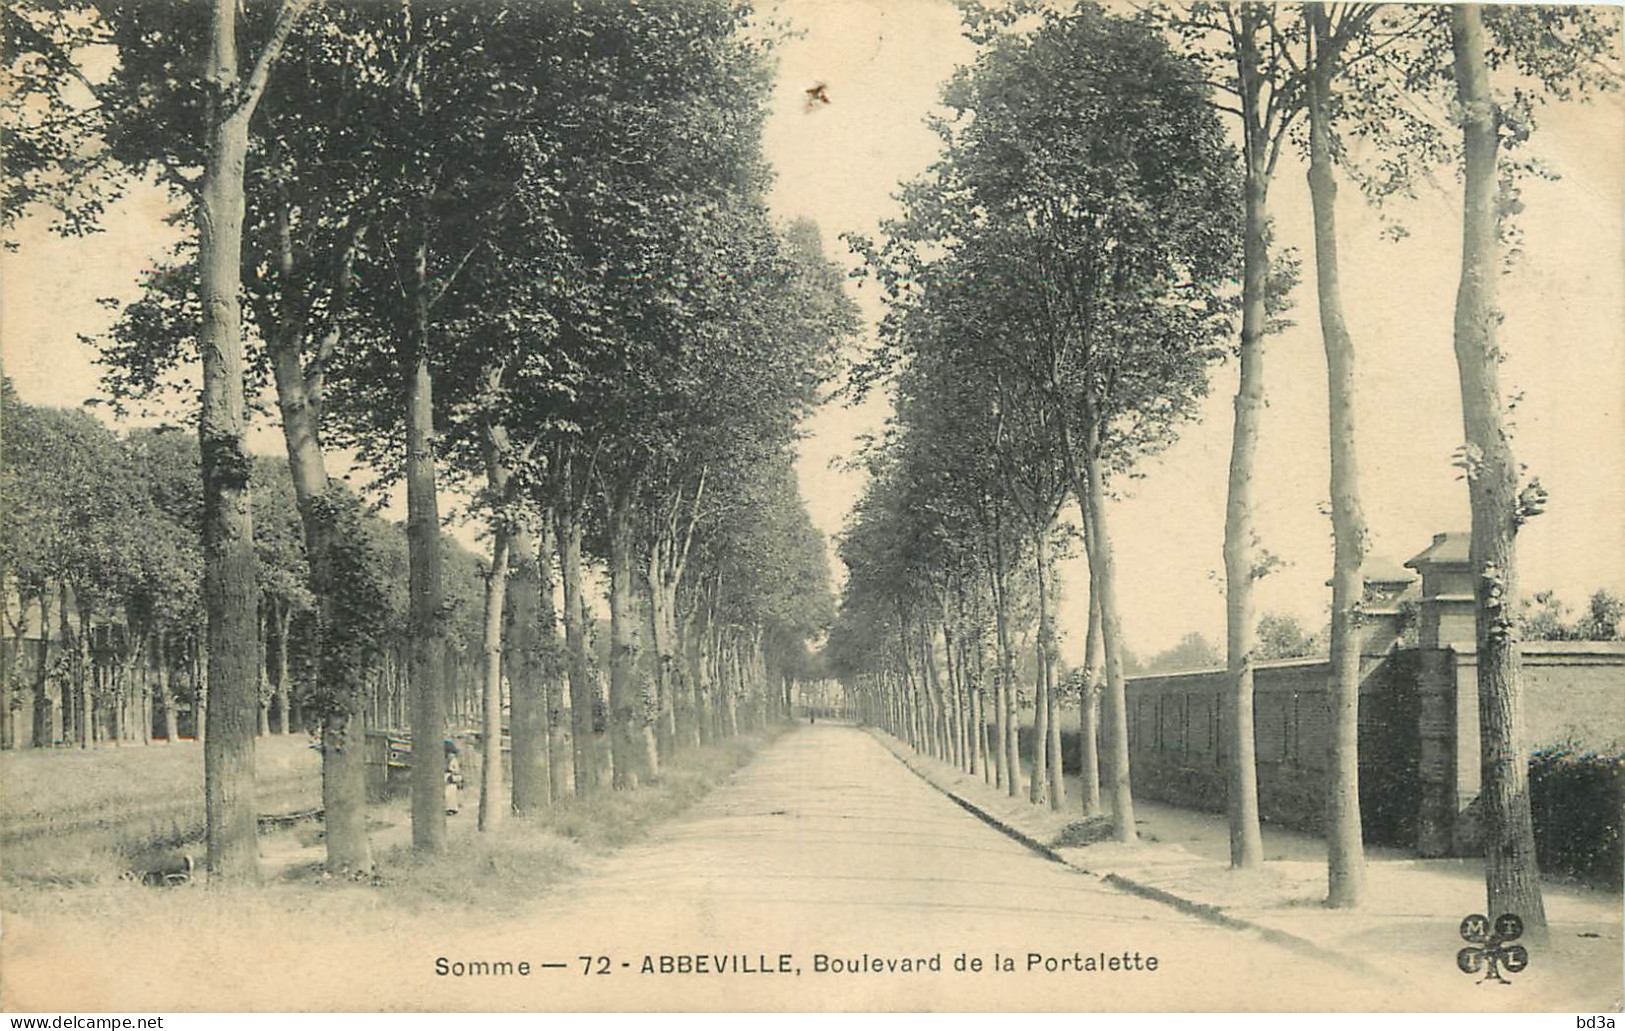 80 - ABBEVILLE - BOULEVARD DE LA PORTALETTE - Abbeville